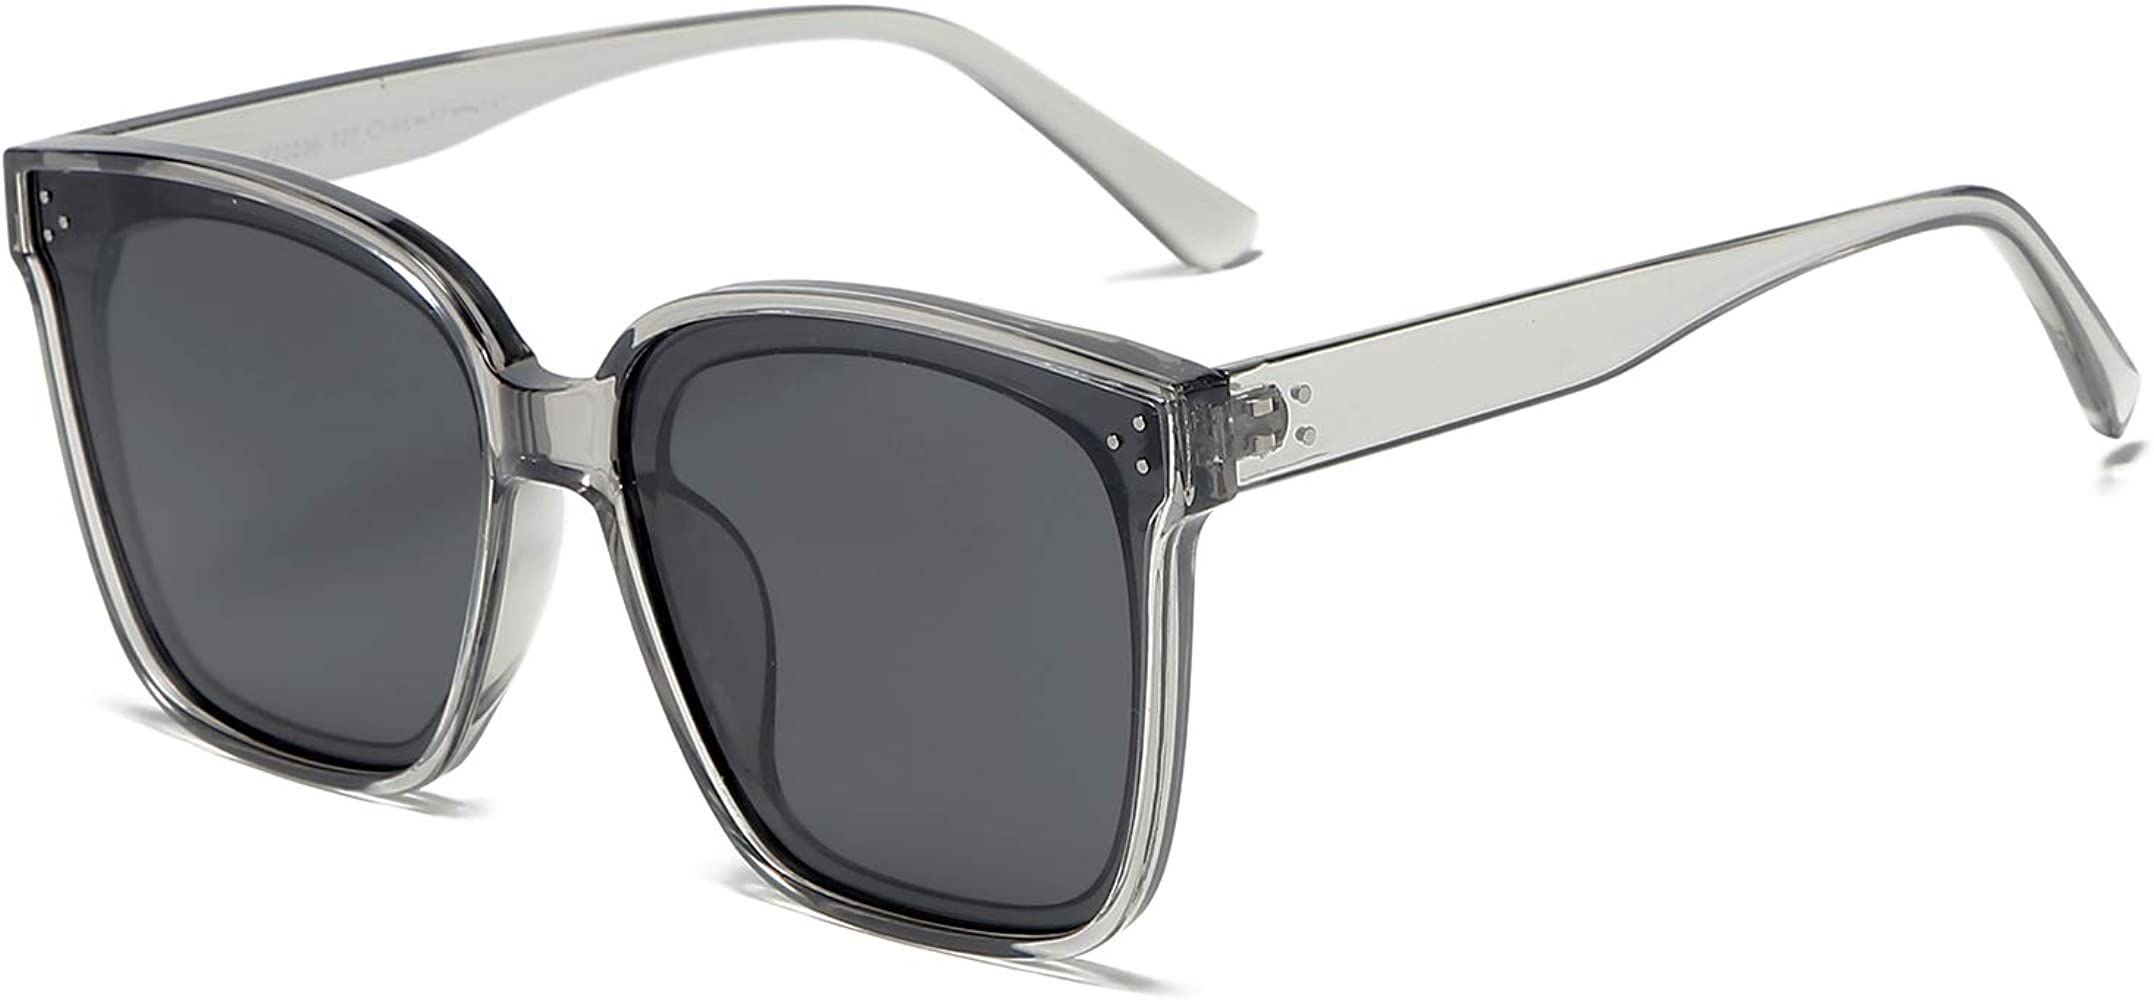 DUSHINE Oversized Square Polarized Sunglasses For Women With Rivets Retro Vintage UV Protection | Amazon (US)